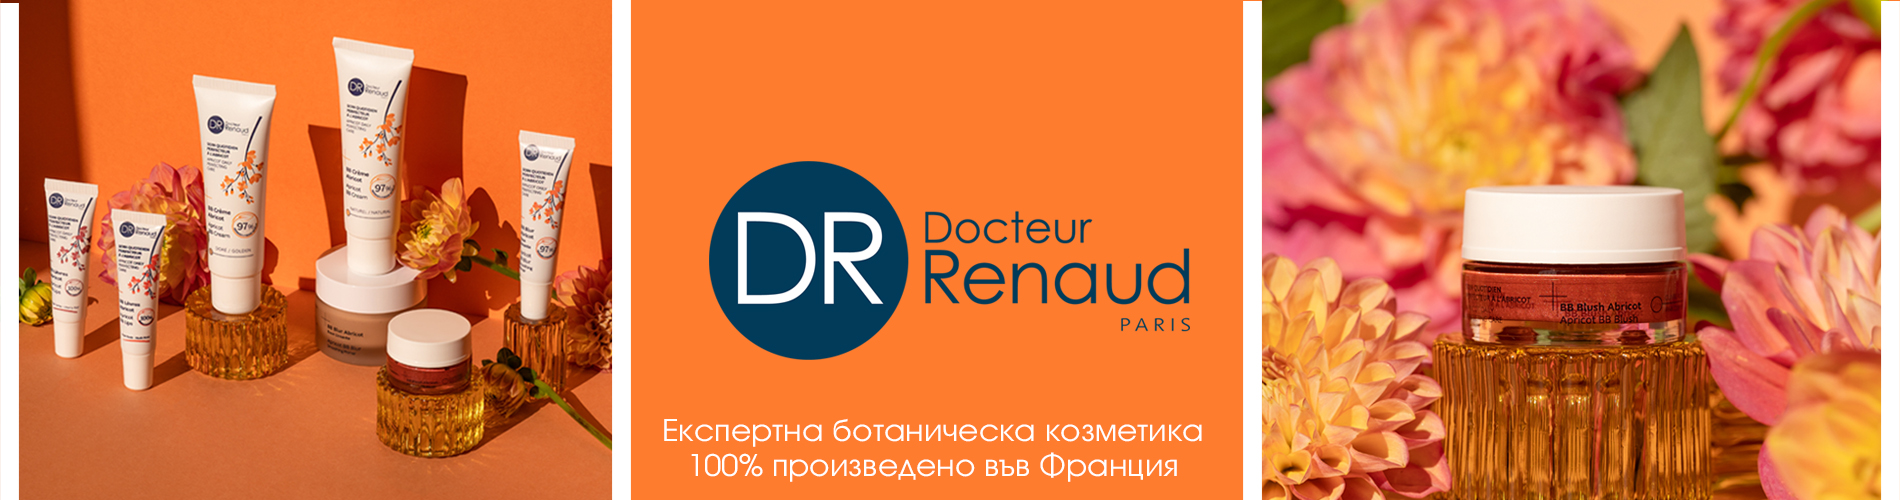 Разгледайте промоциите на Dr Renaud 